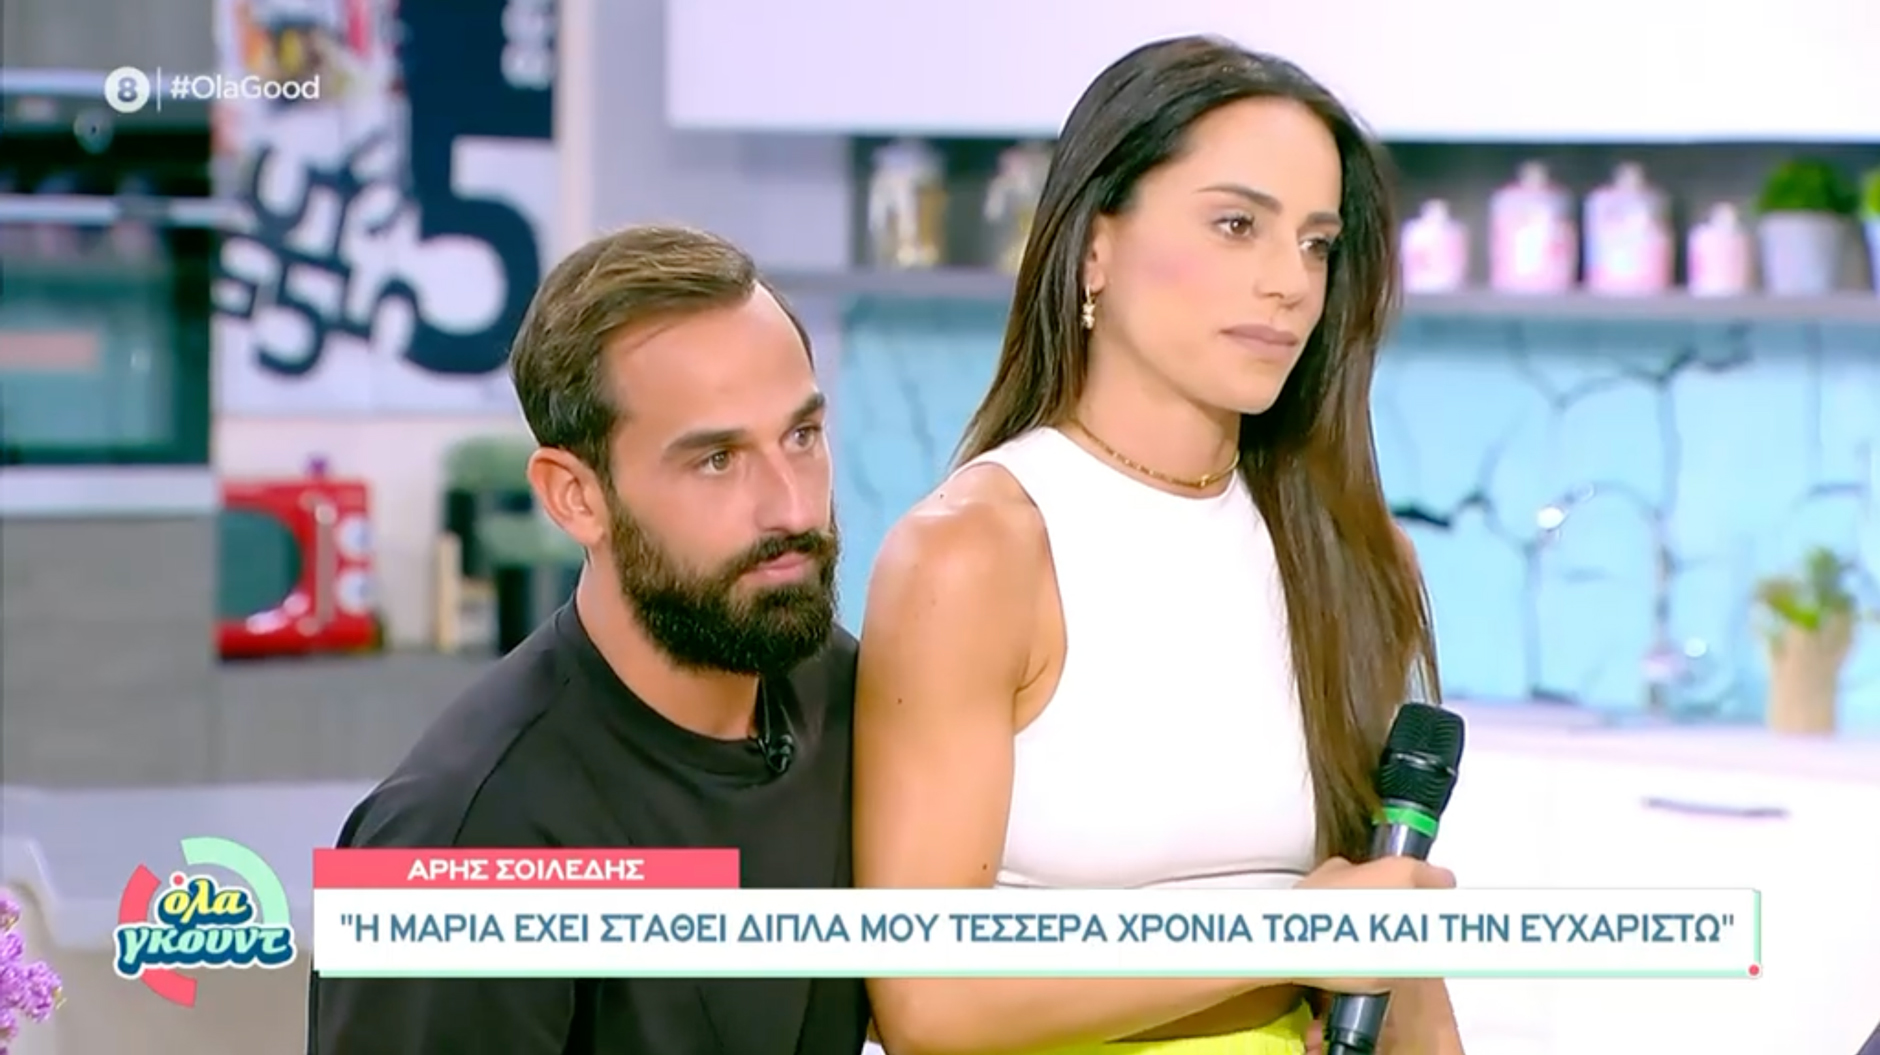 Άρης Σοϊλέδης και Μαρία Αντωνά ανακοίνωσαν πότε παντρεύονται